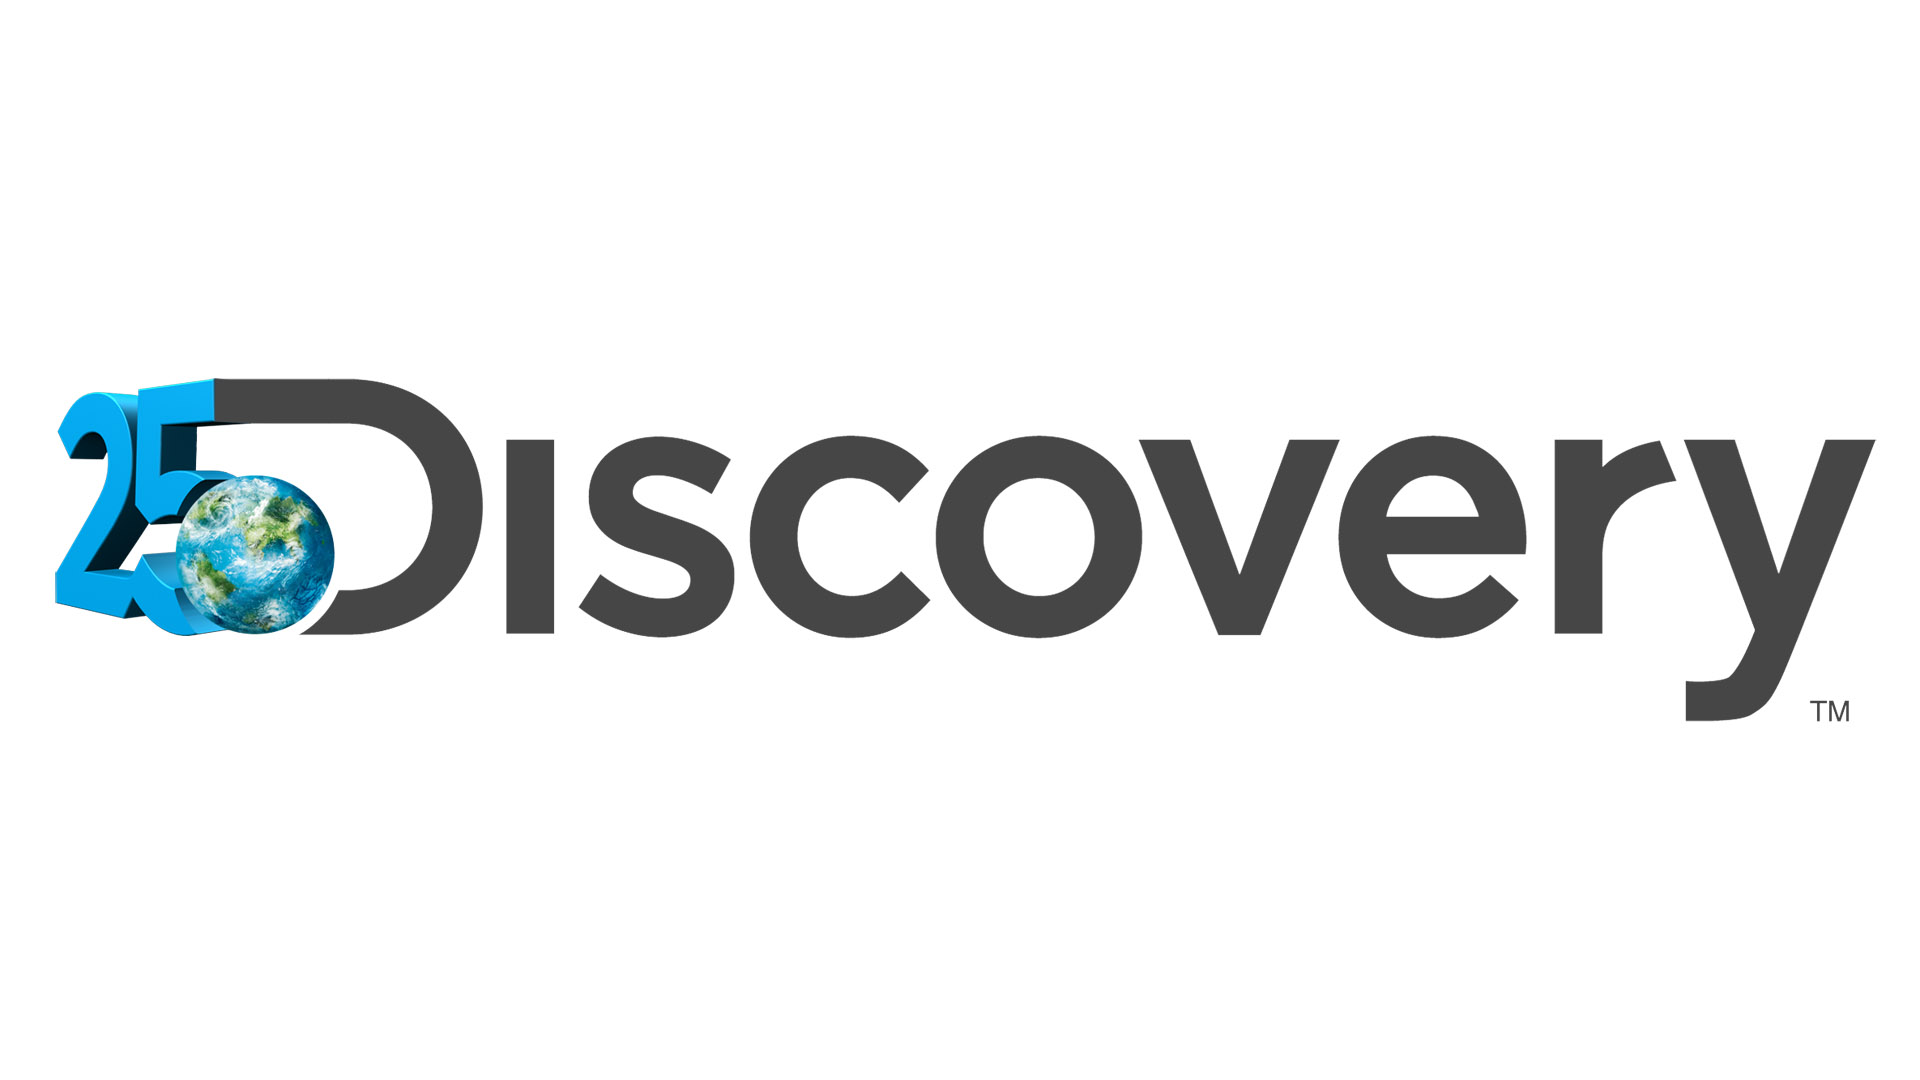 go discovery com activate